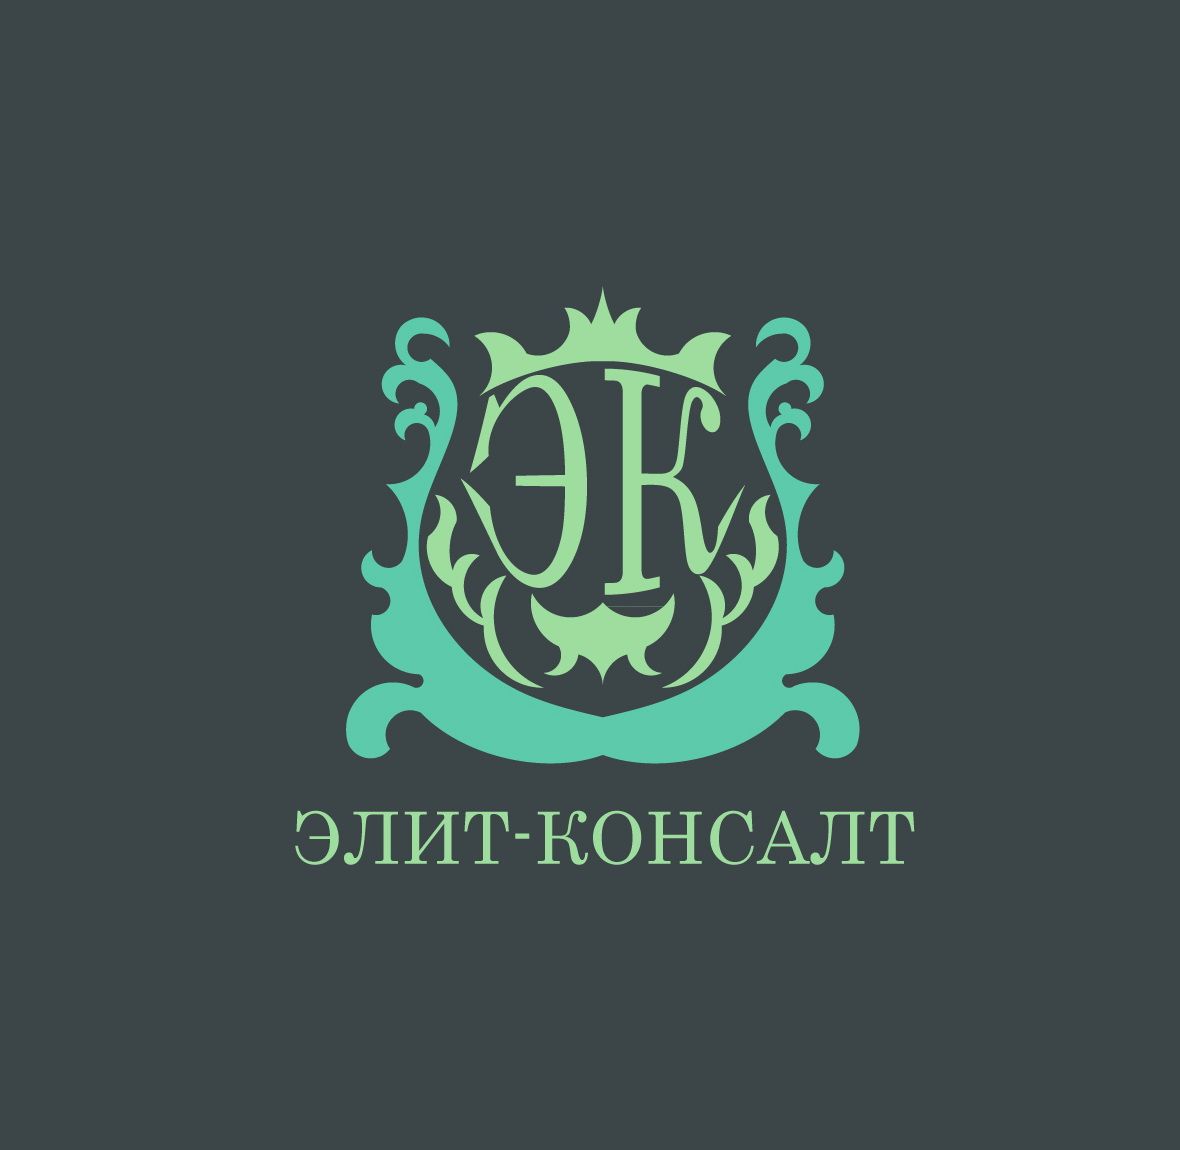 Логотип консалт-компании. Ждем еще предложения! - дизайнер kirilln84